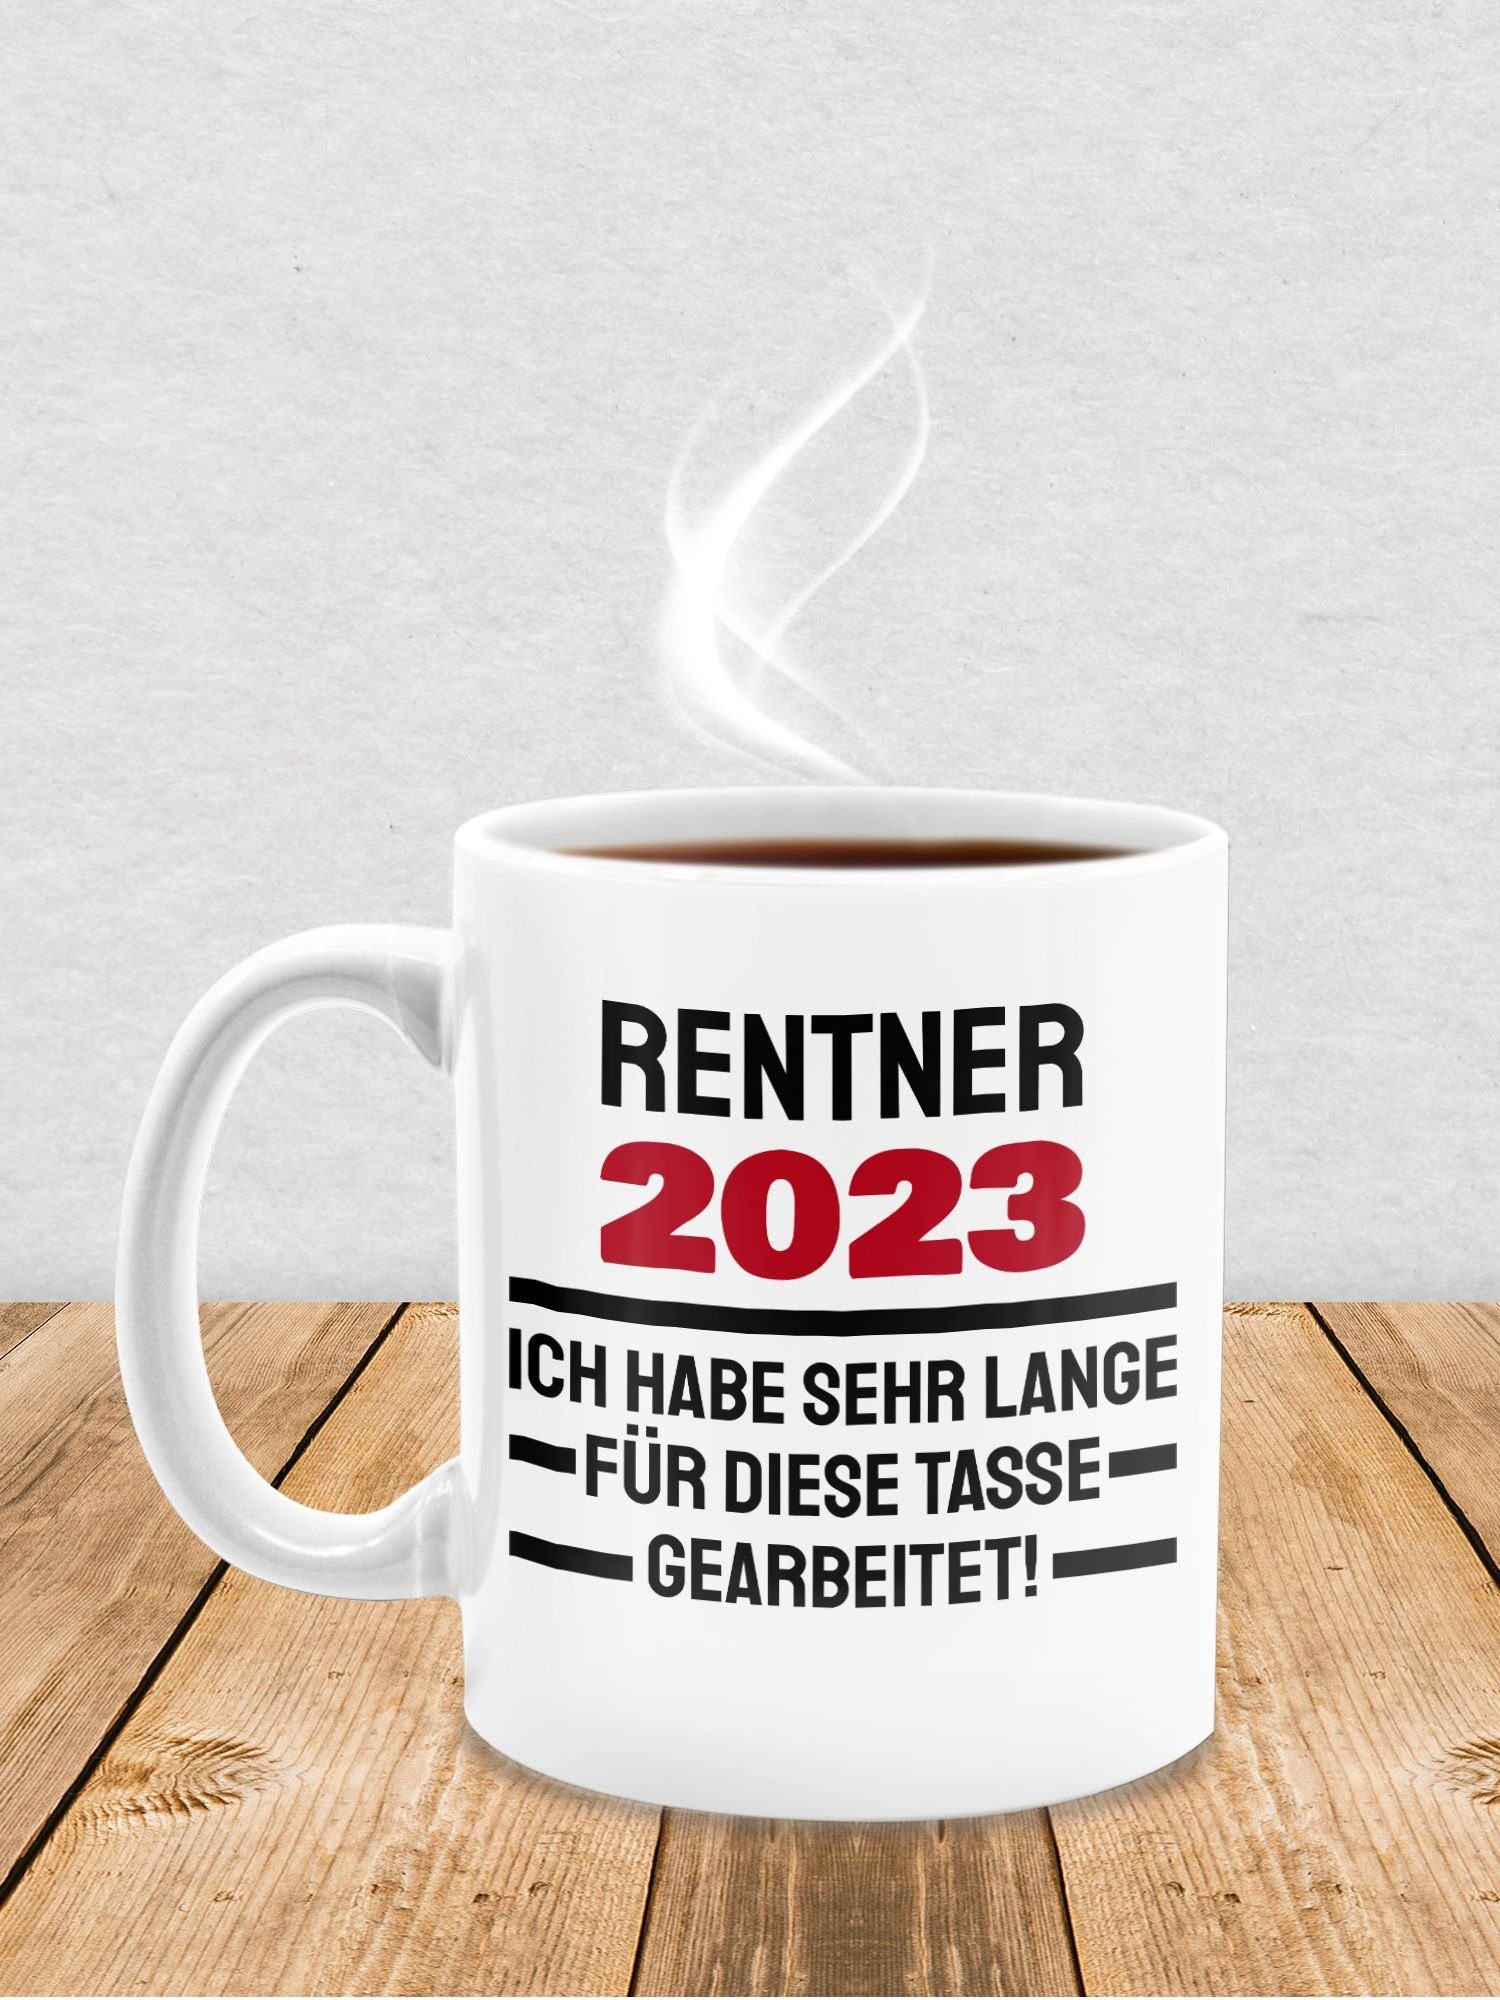 Shirtracer lange Rentner gearbeitet, 2023 Geschenk habe 1 Tasse - diese für Ich Tasse sehr Weiß Kaffeetasse Keramik, Rente